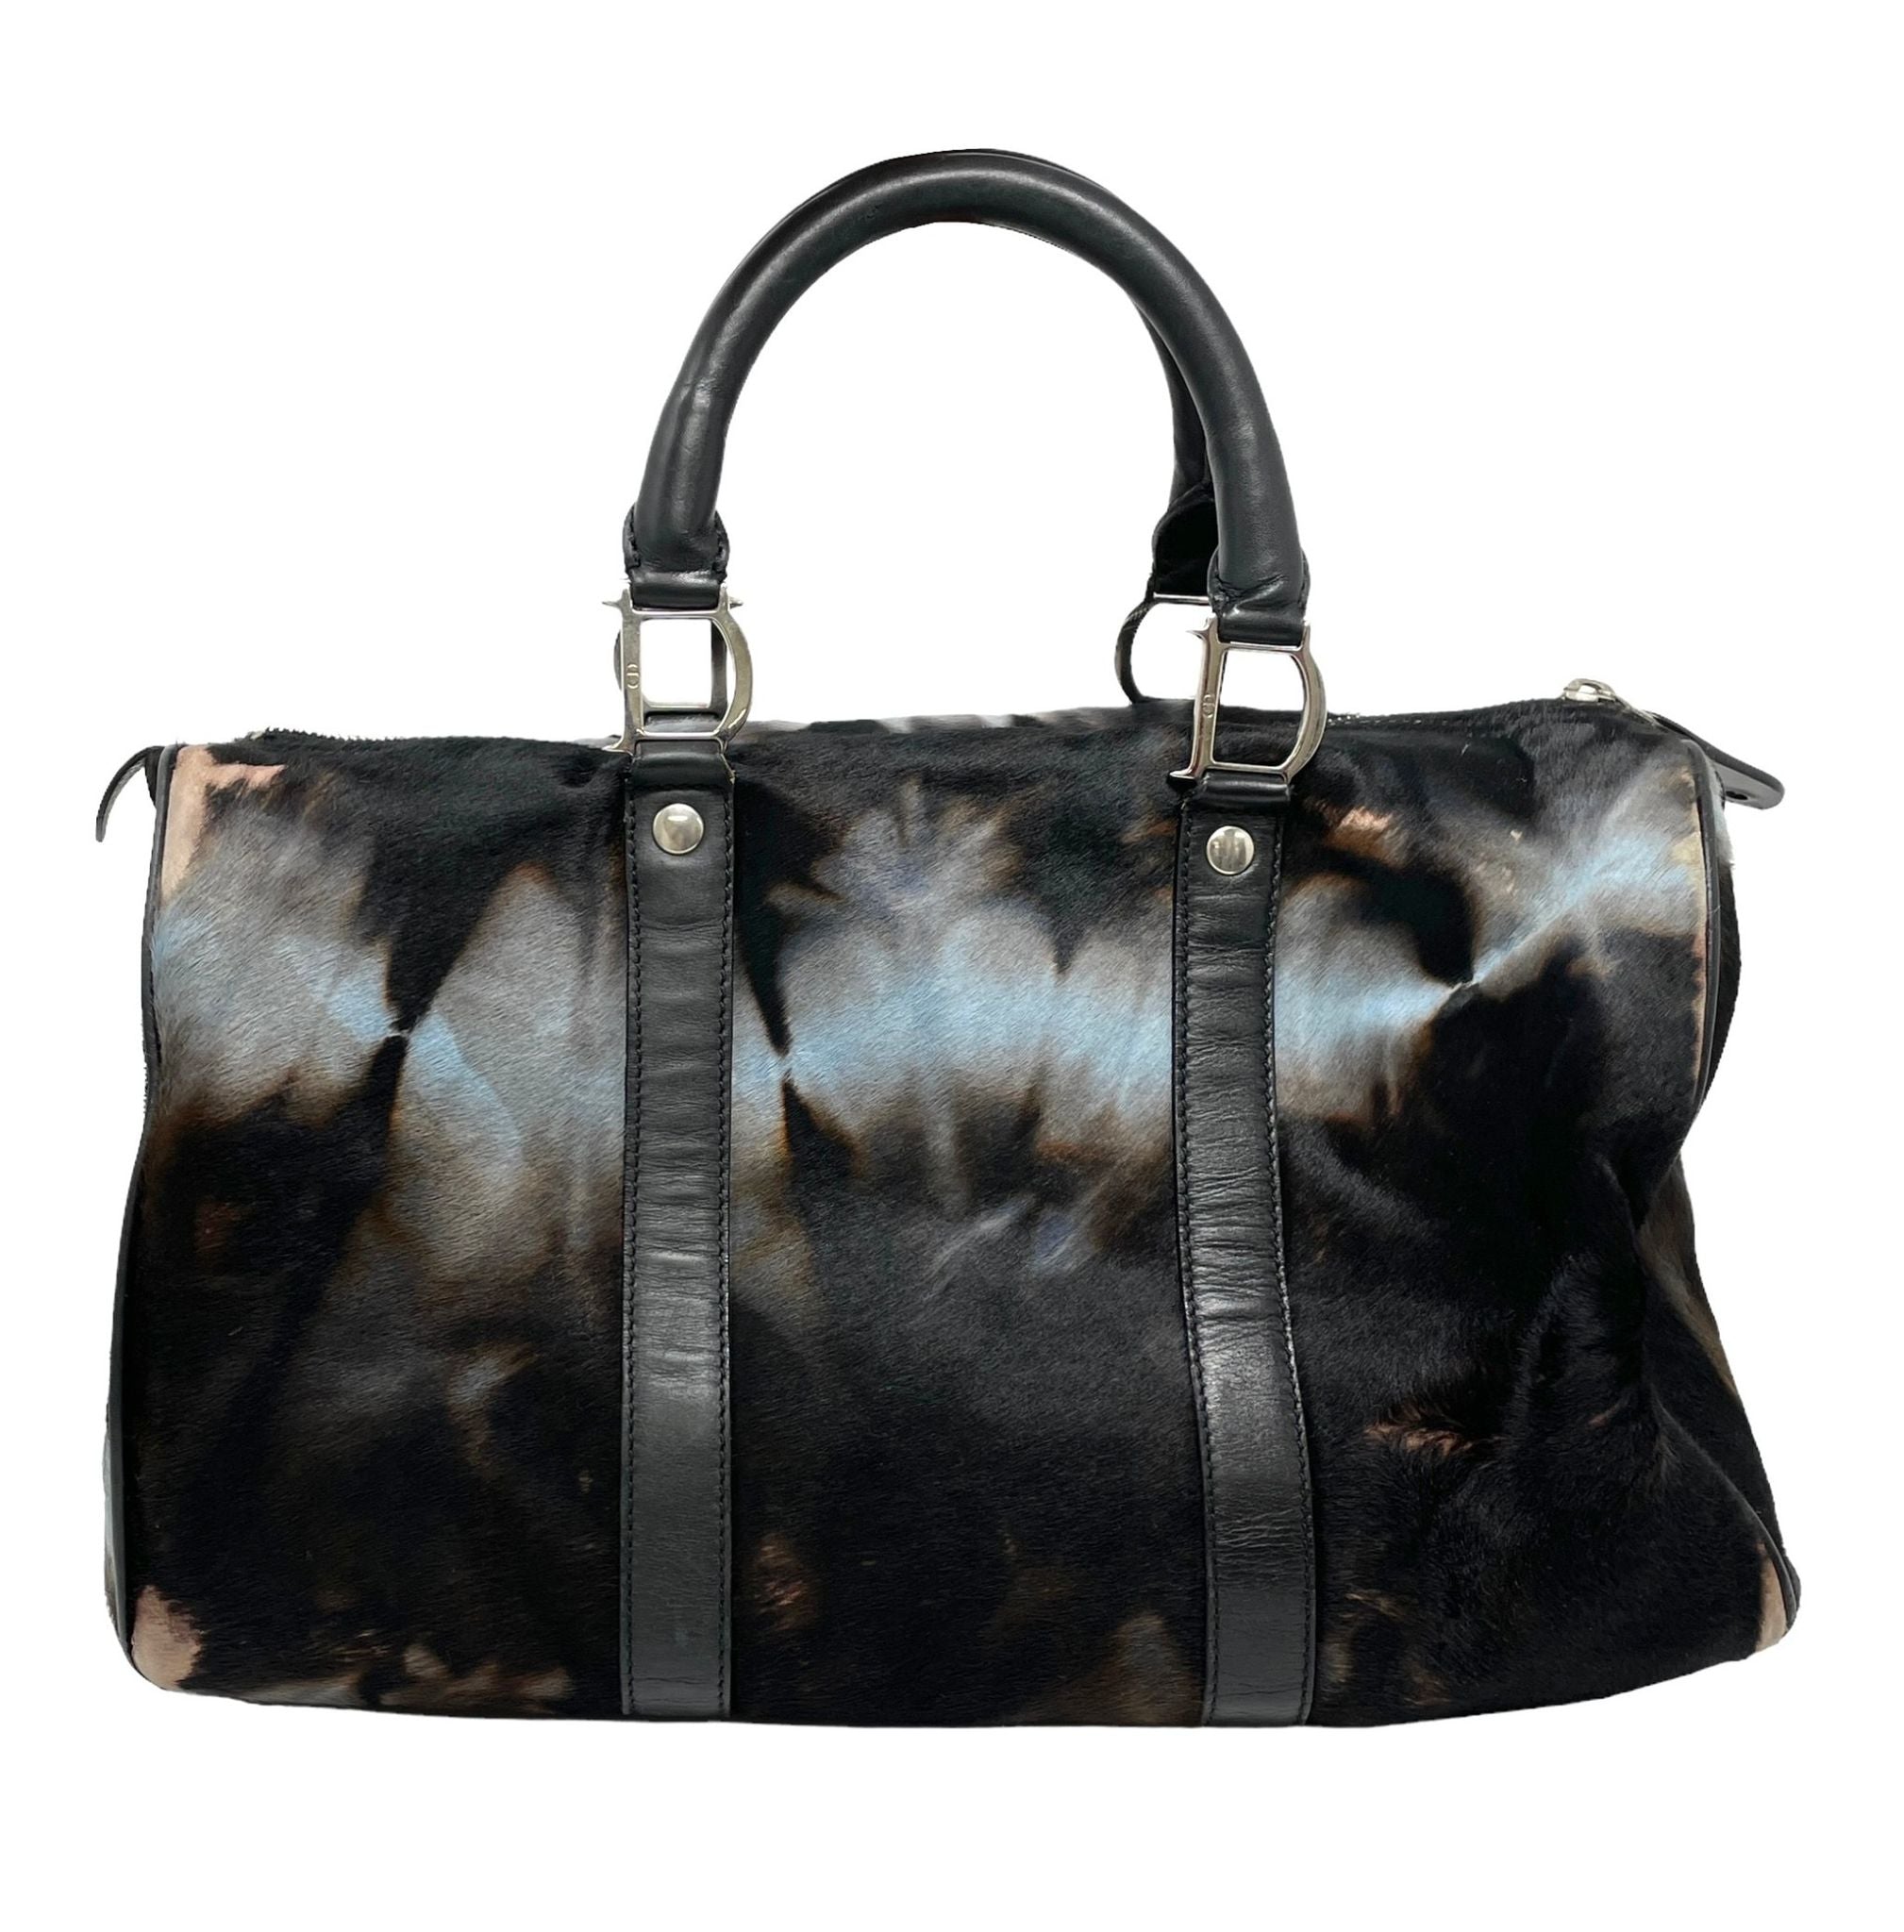 Dior Updates Lady Bag in Black, Blue Velvet